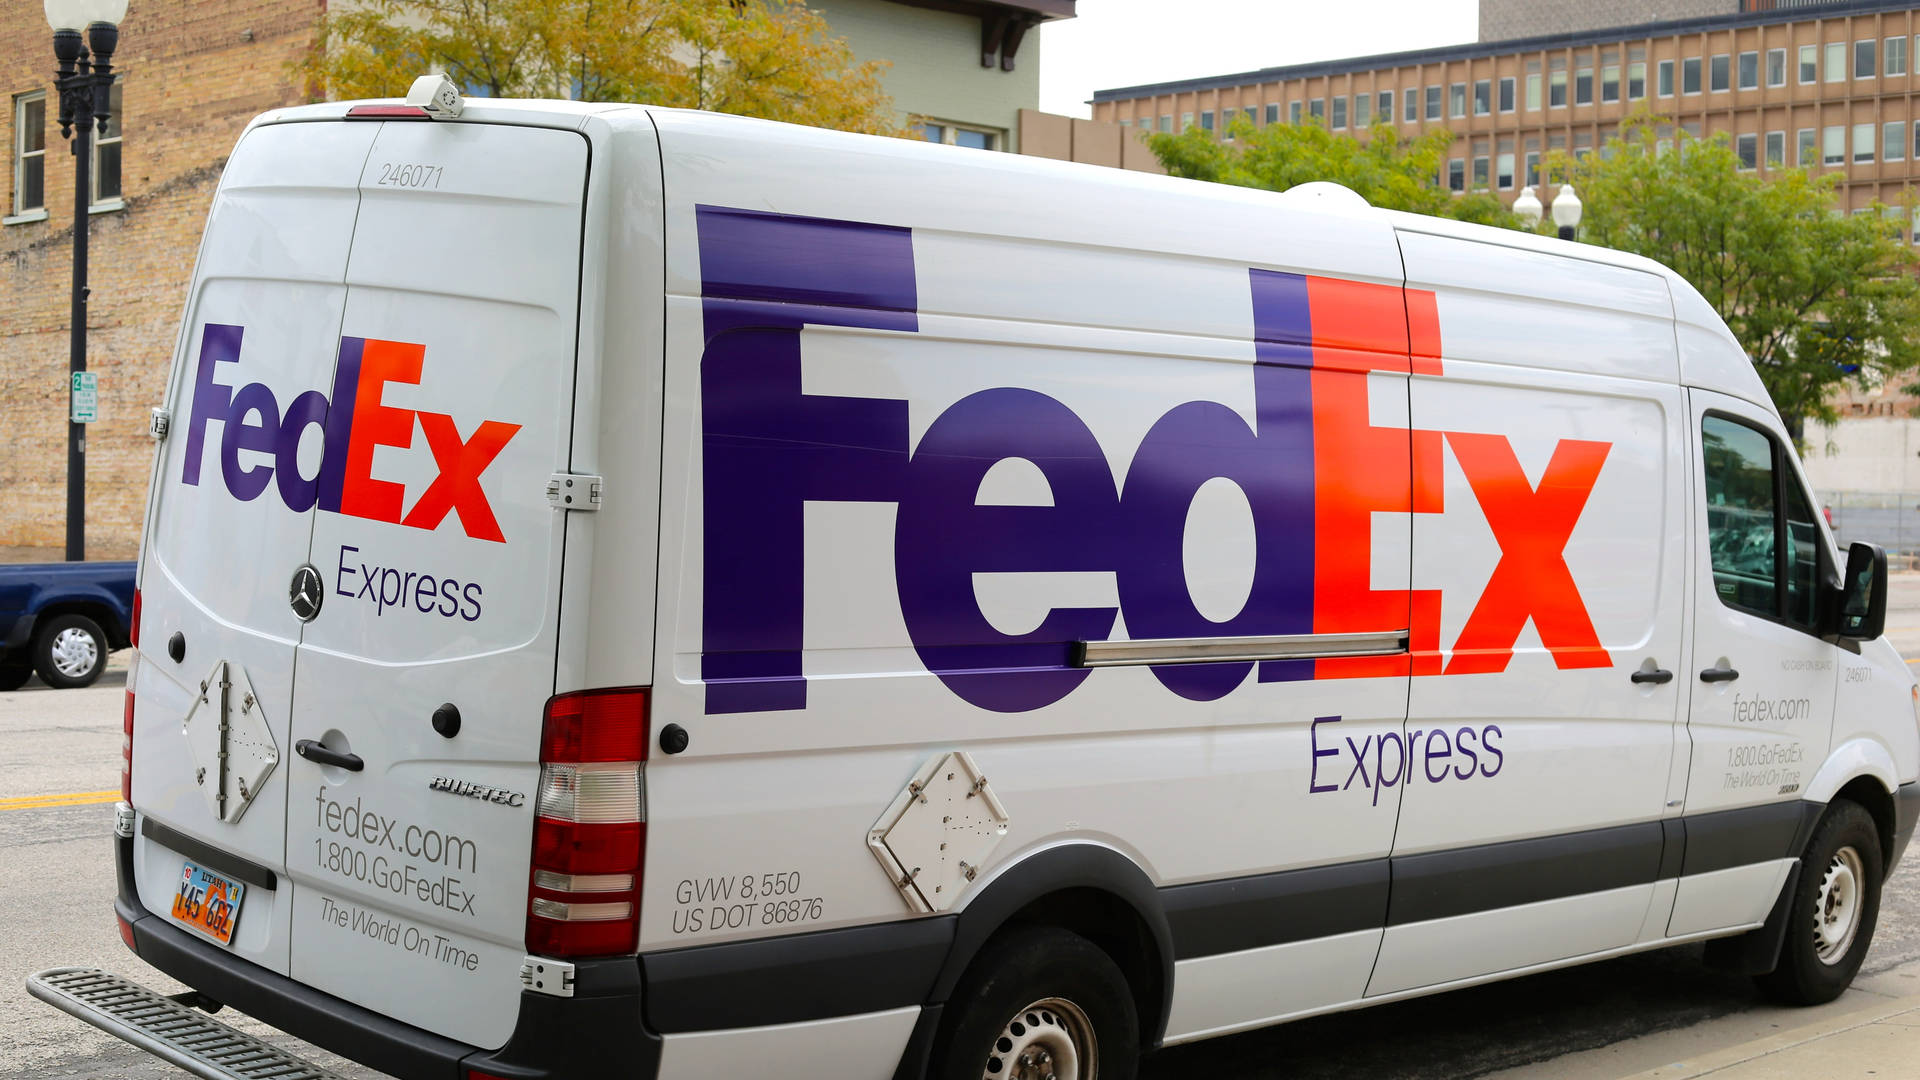 Fedex Express Delivery Van